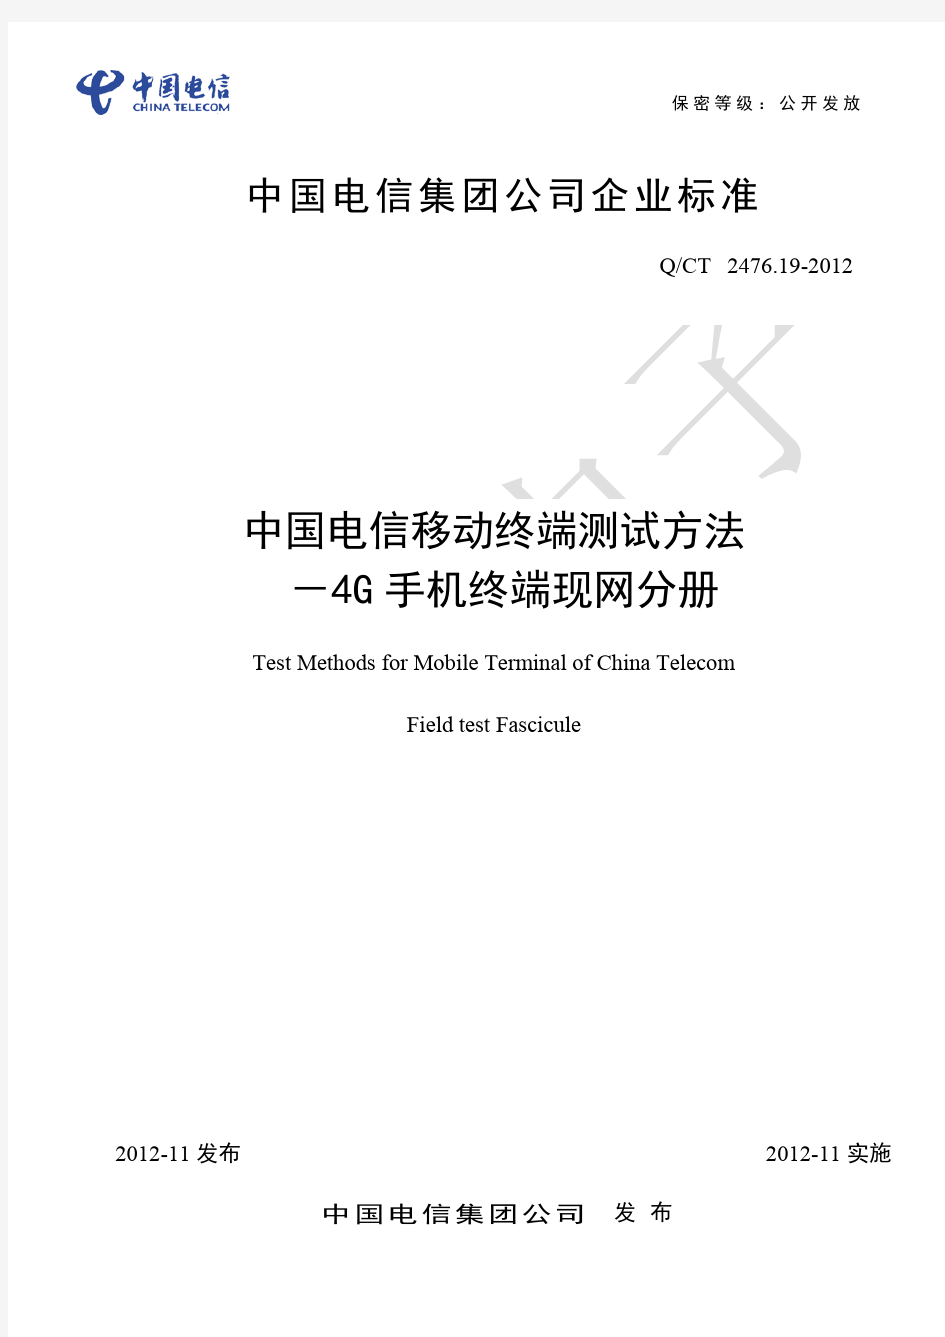 中国电信LTE终端测试方法-手机终端现网分册